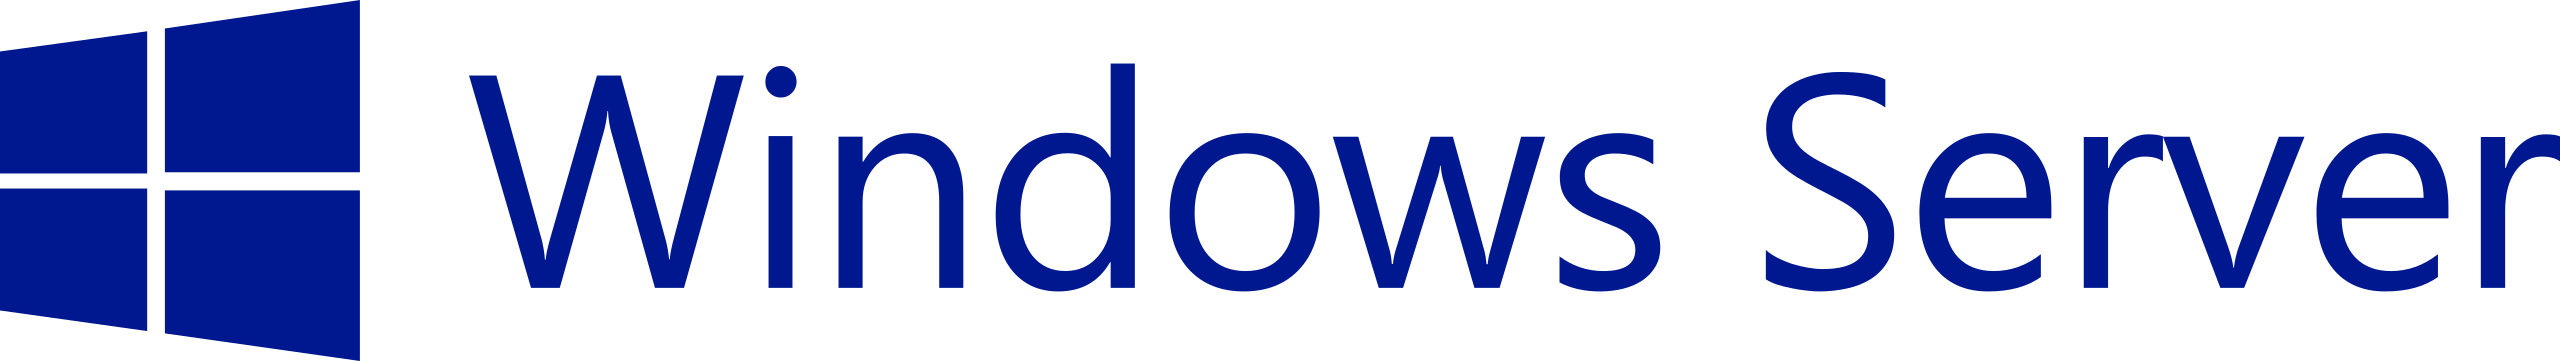 Windows_Server_logo